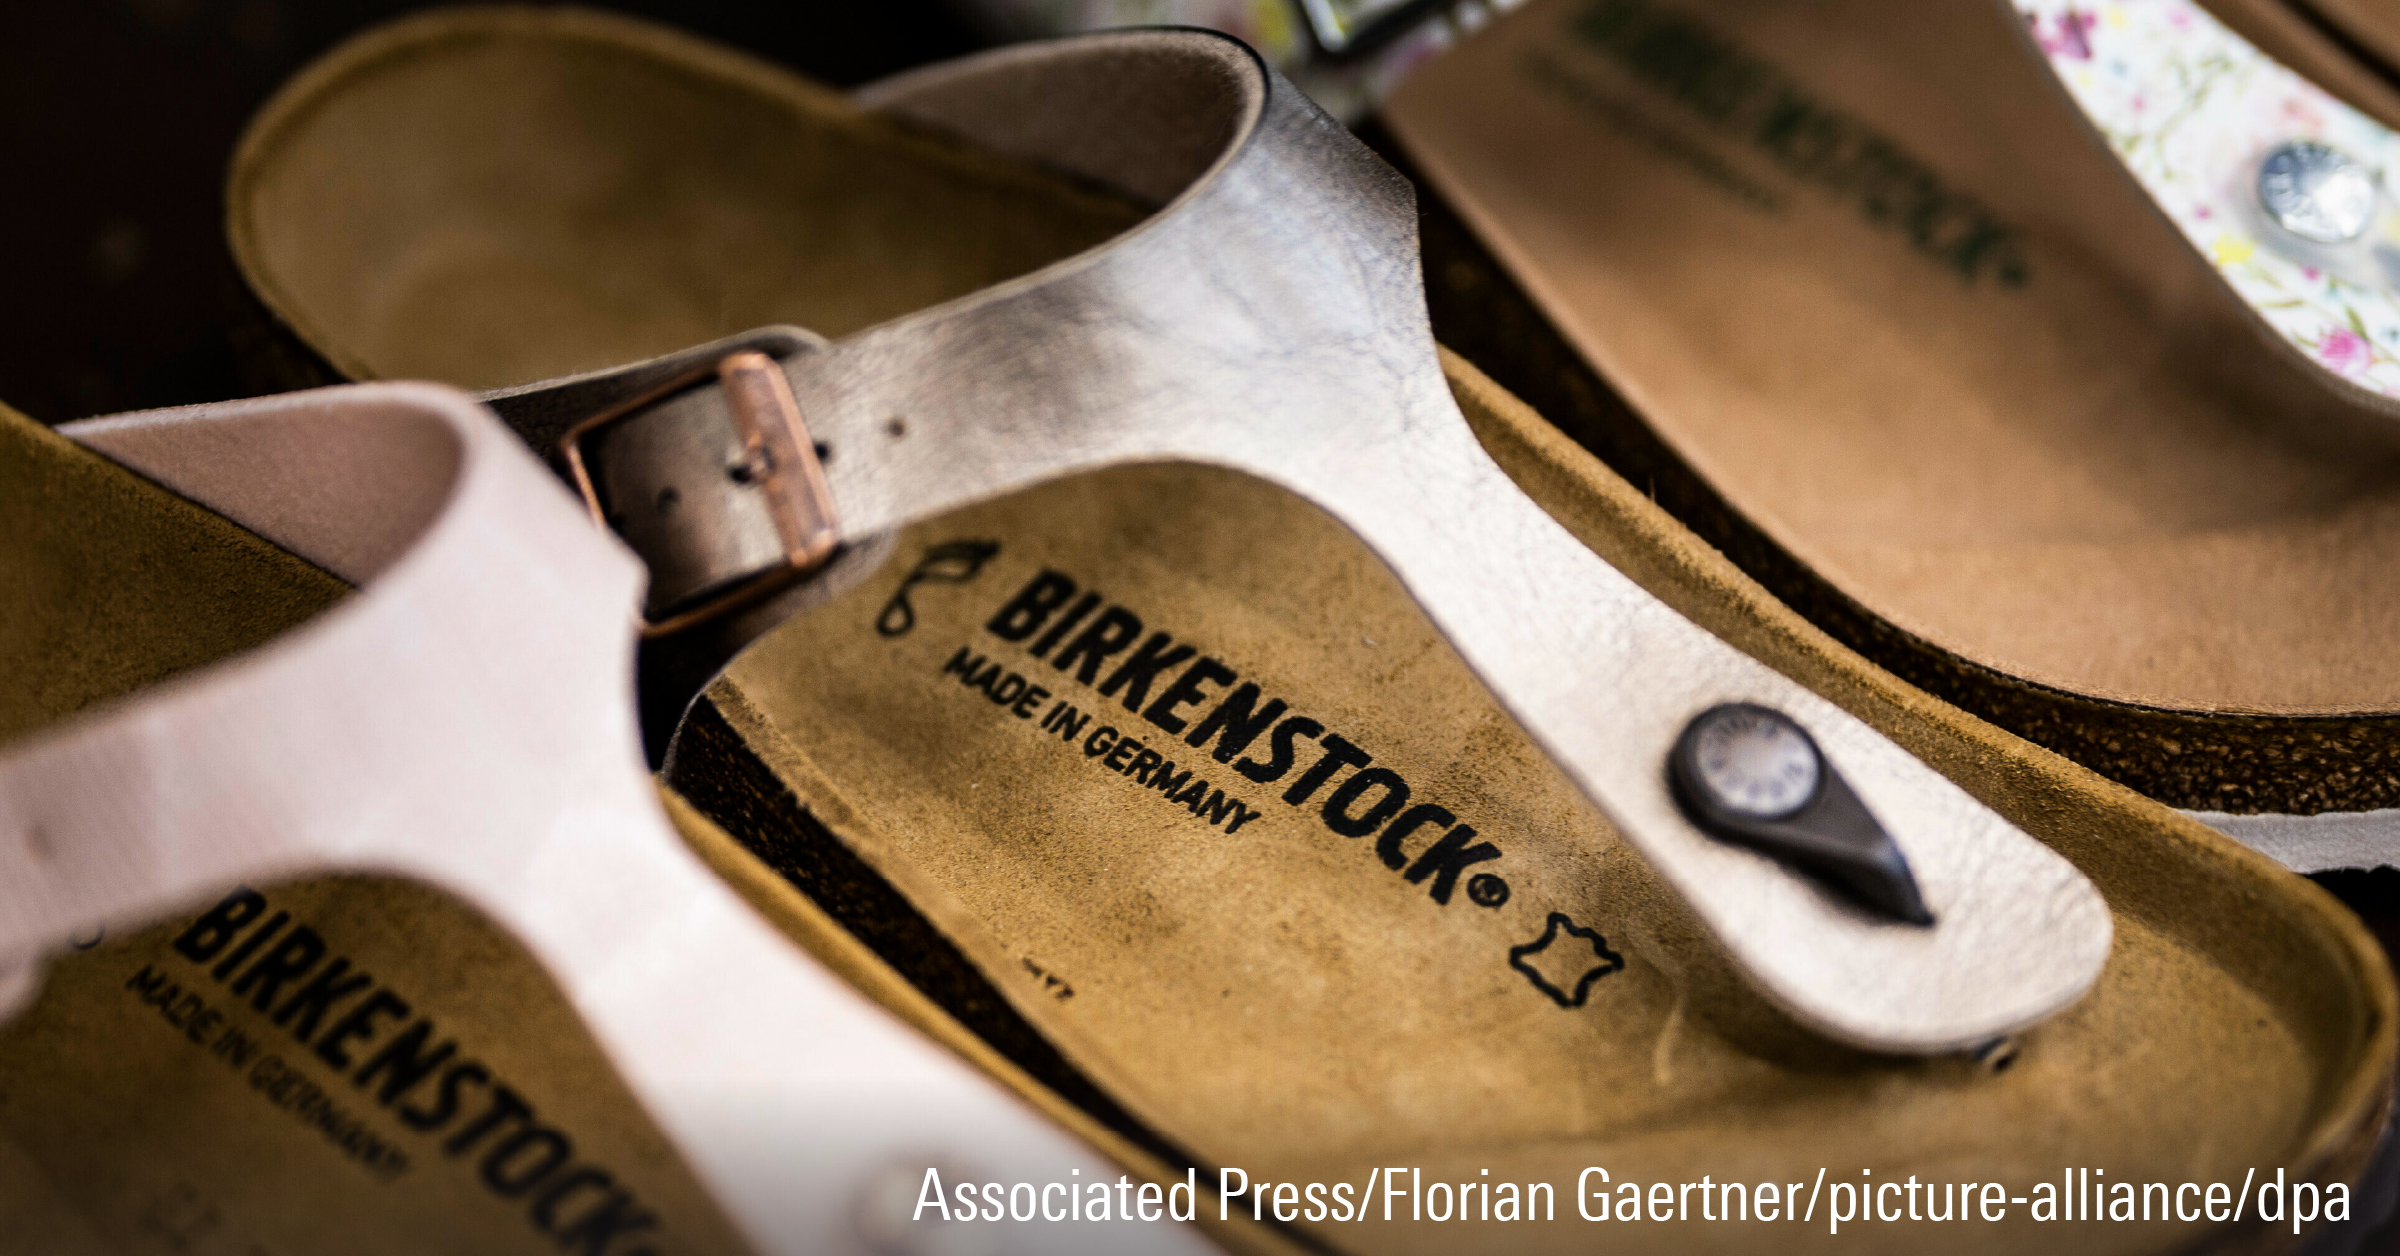 The Birkenstock logo on a shoe.